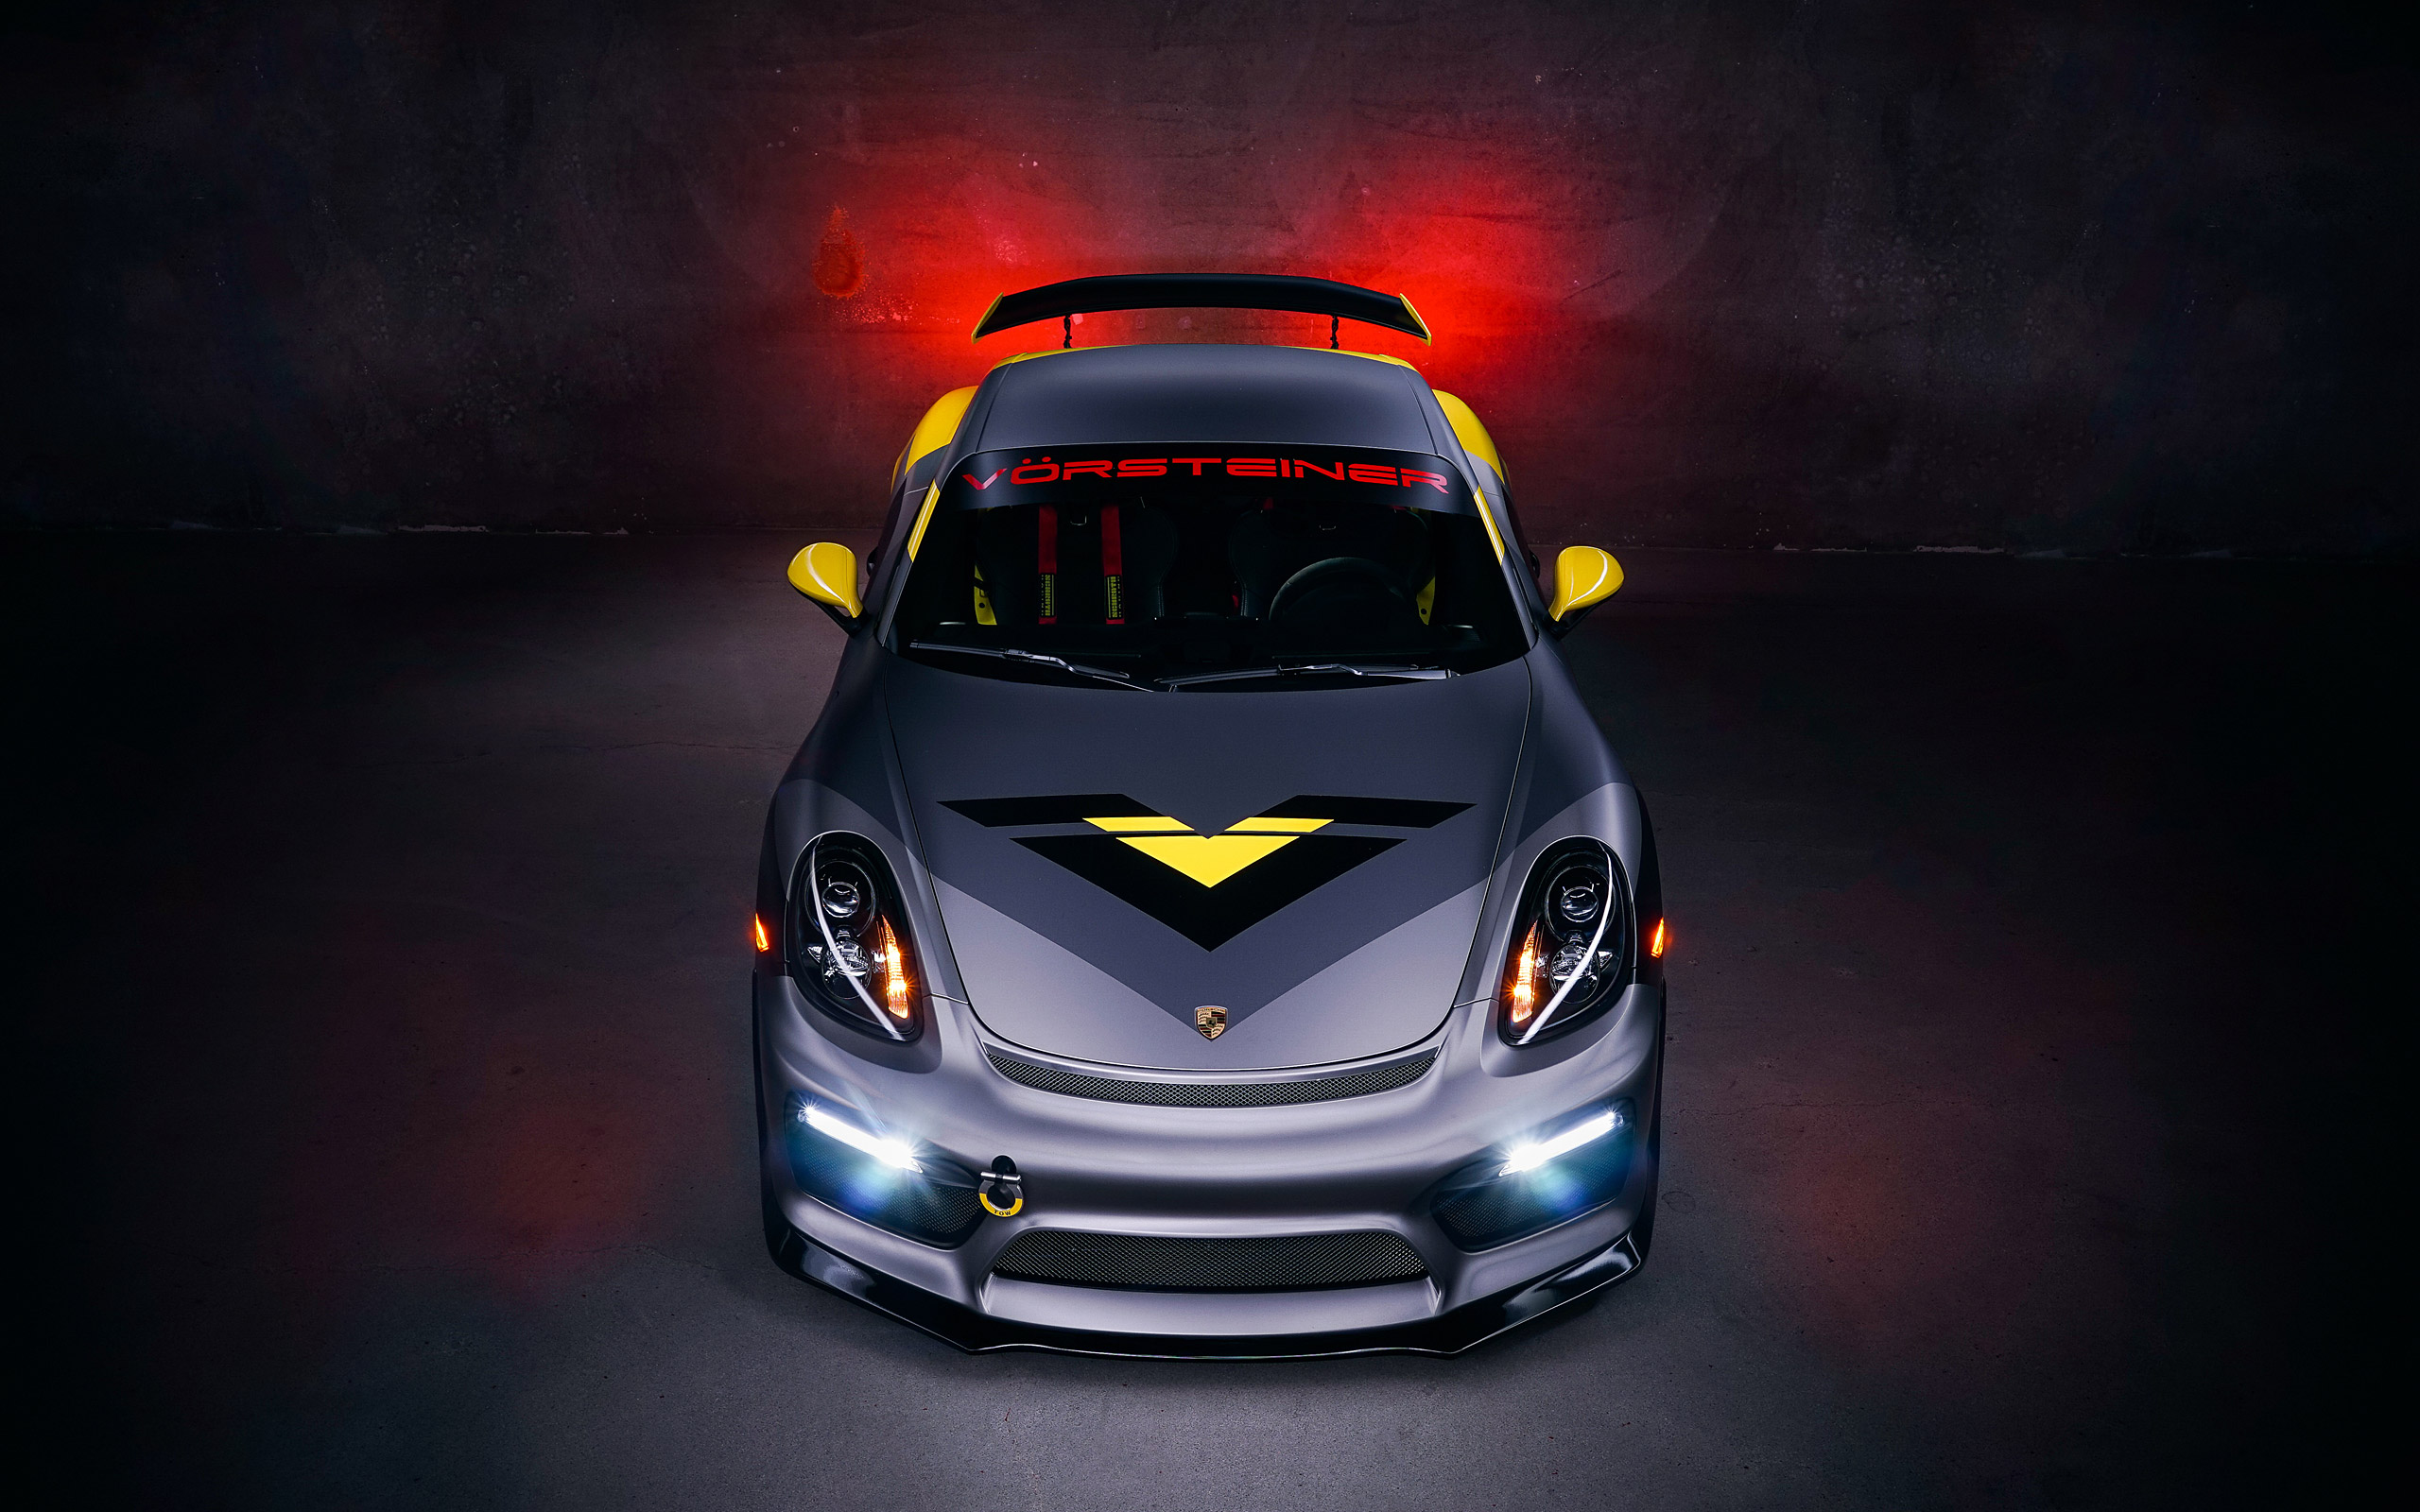  2016 Vorsteiner Porsche Cayman GT4 Wallpaper.